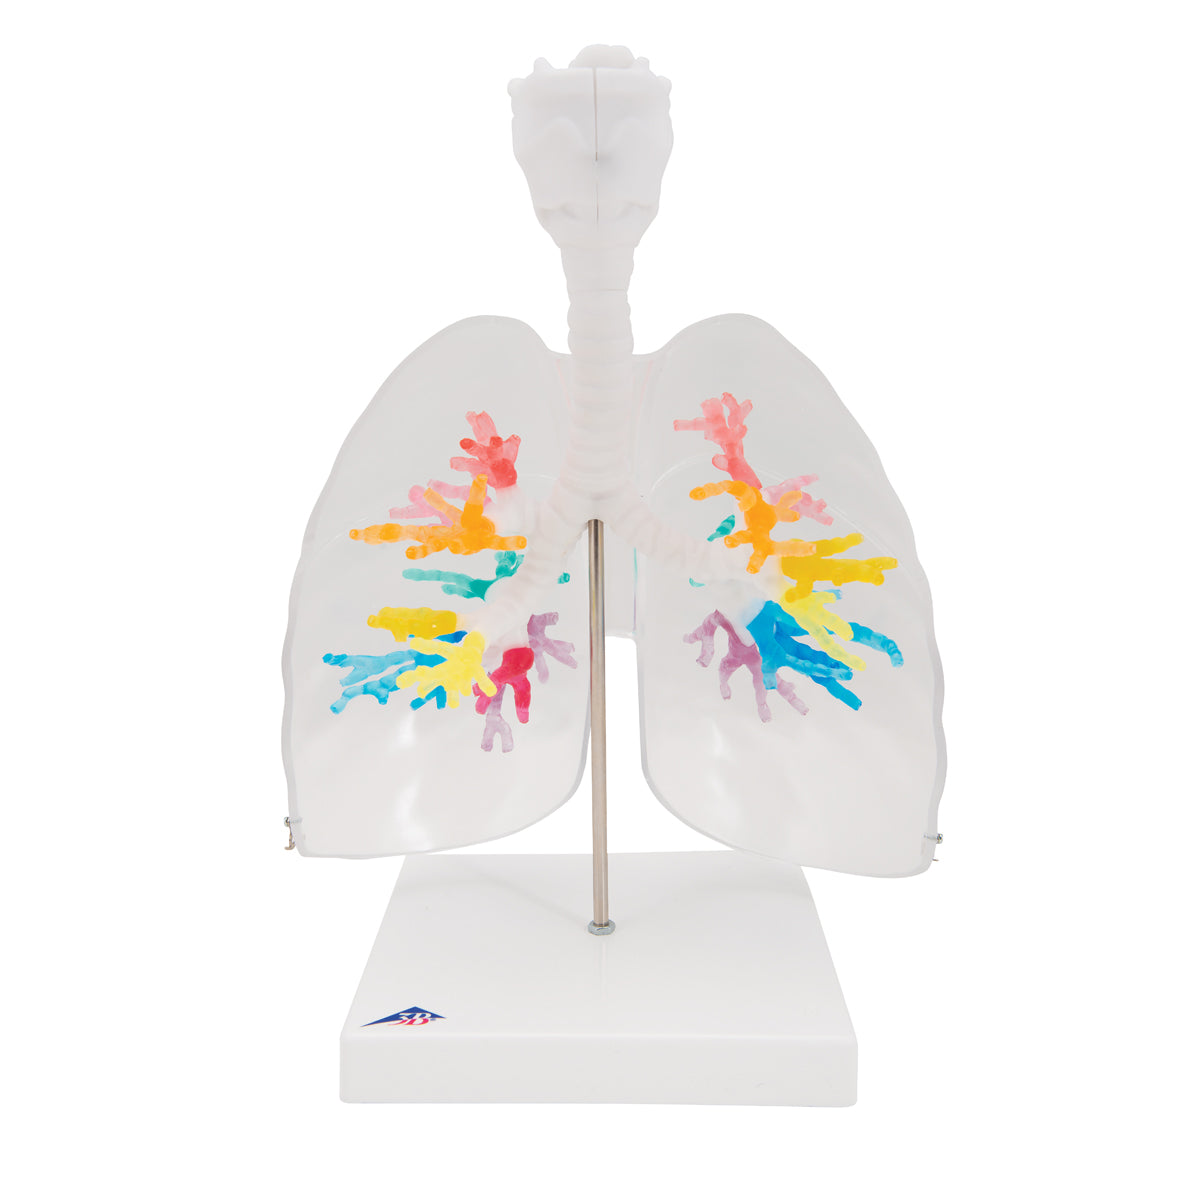 CT bronkier med struphuvudet 3D-modell via tomografiska data med lungor